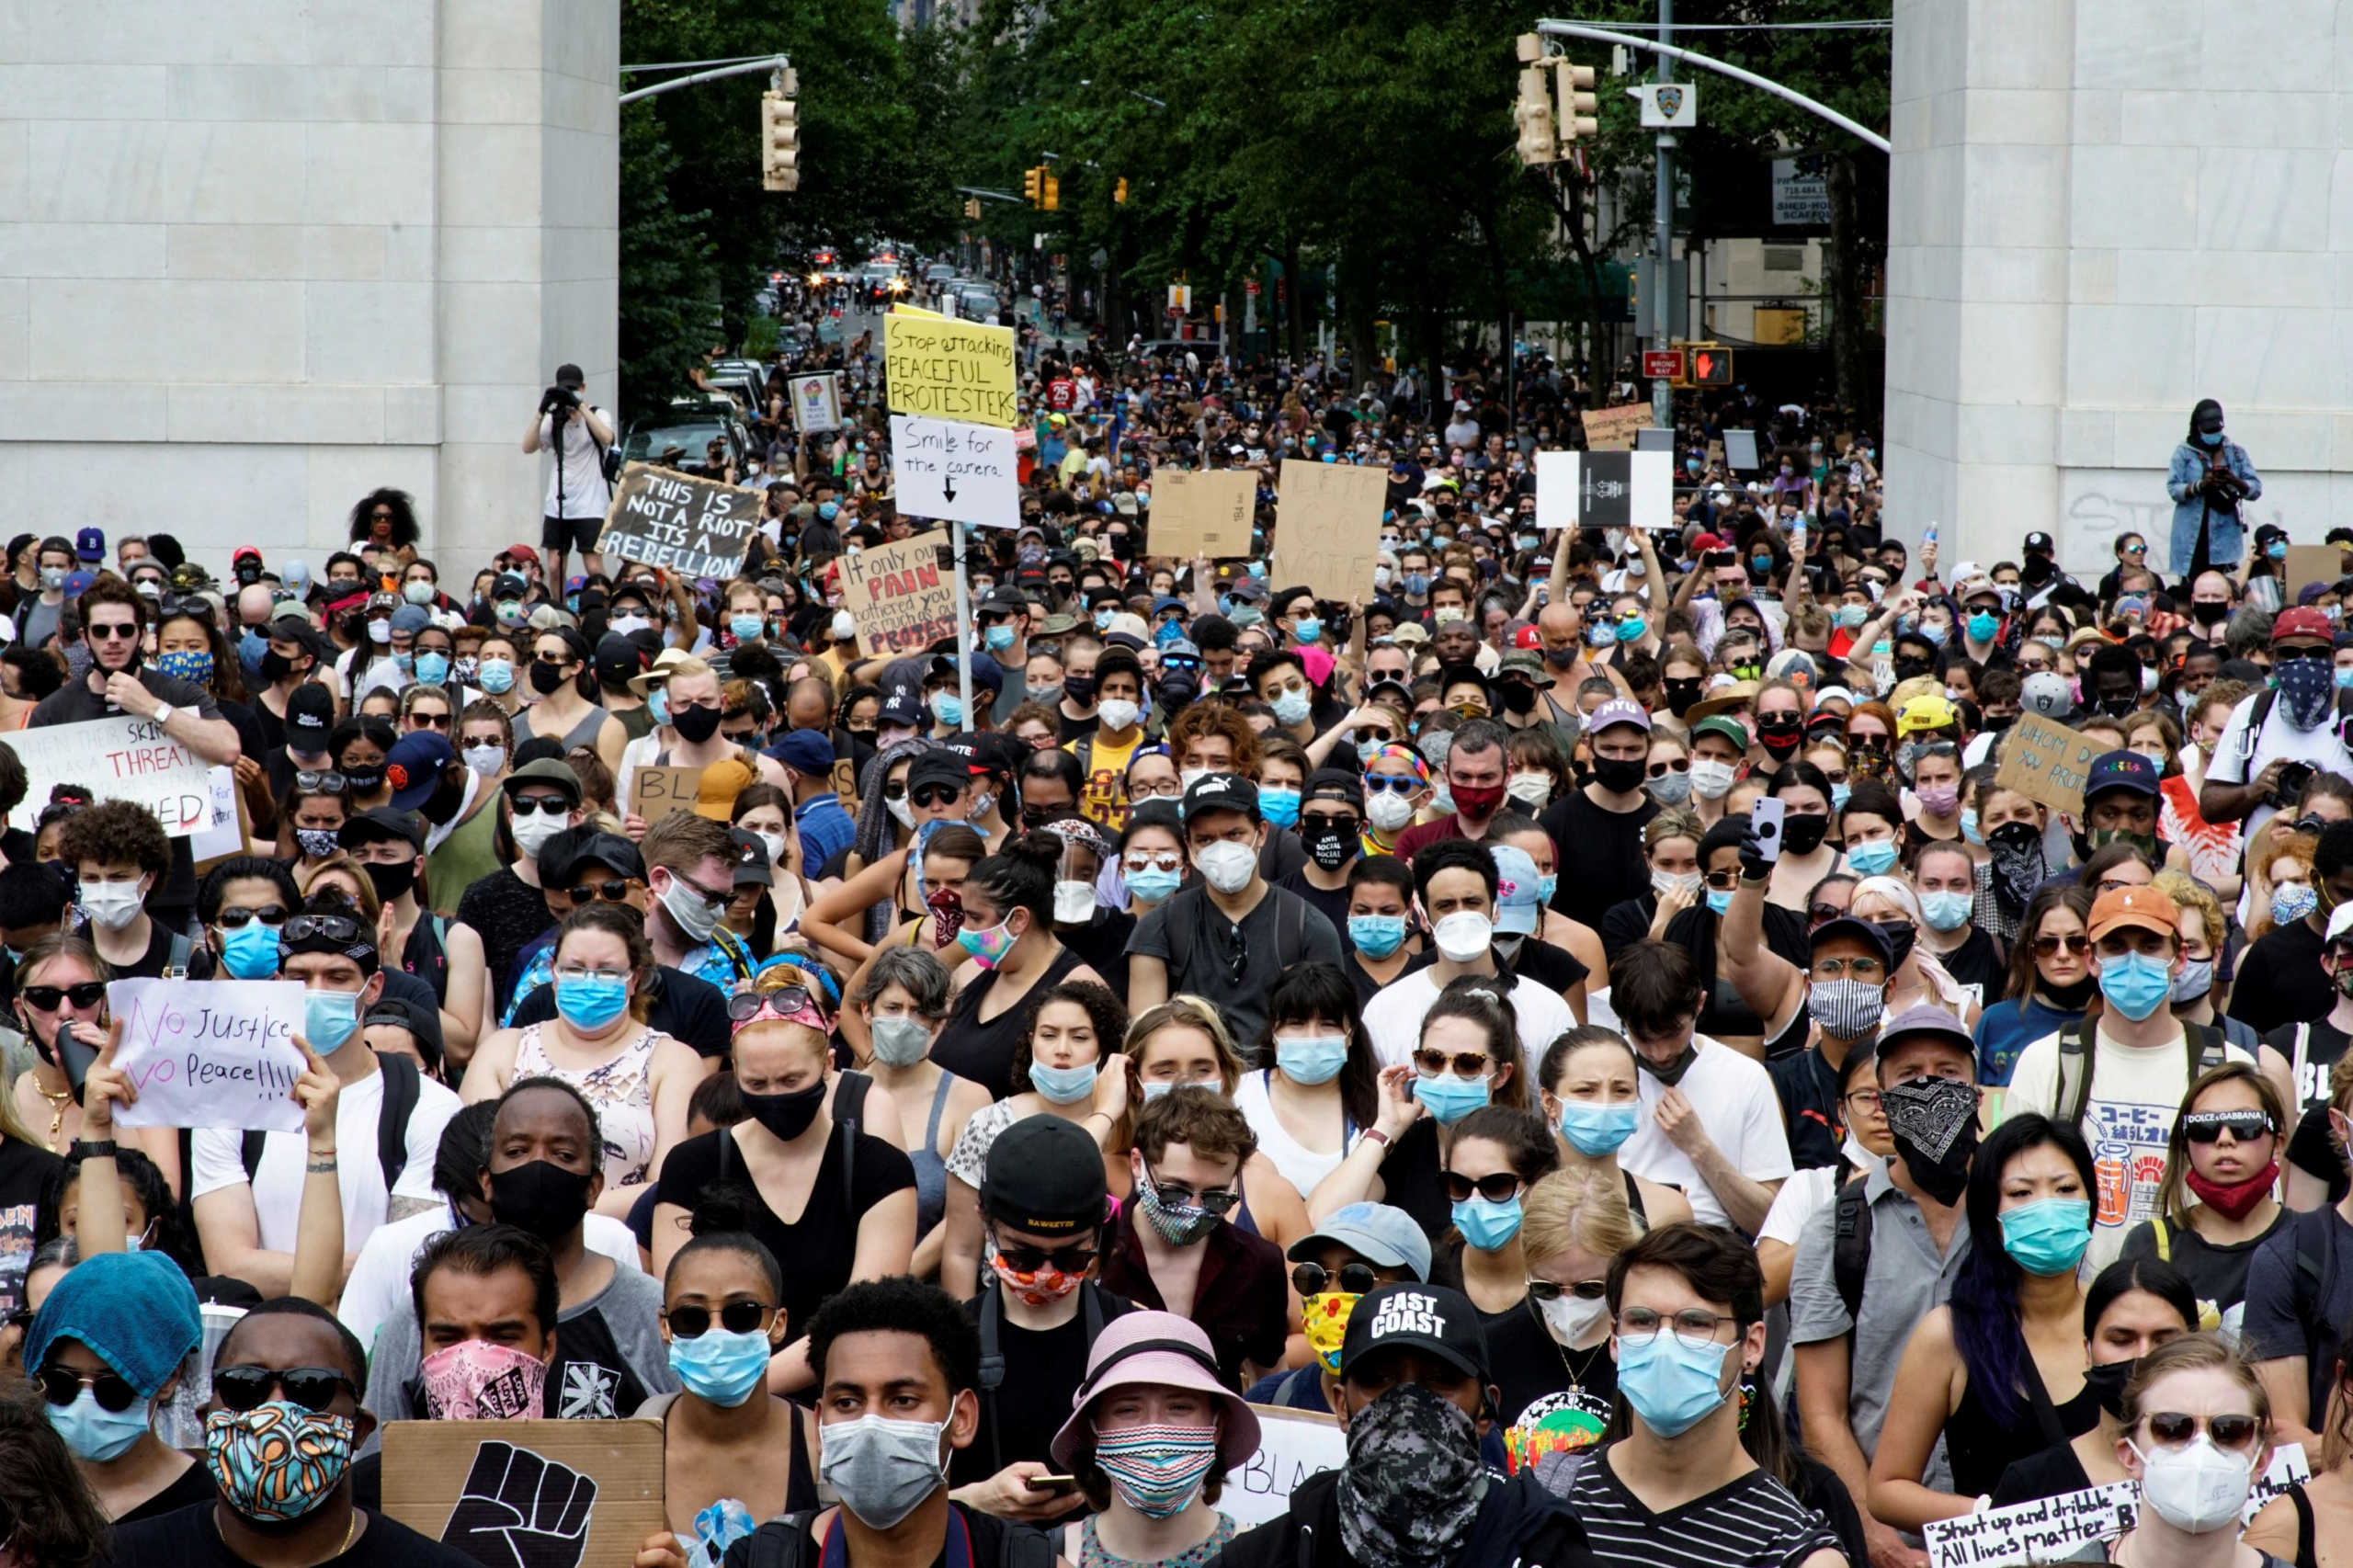 “Σείεται” ξανά η Ουάσινγκτον! Πλημμύρισαν οι δρόμοι από τις διαδηλώσεις για τον Τζορτζ Φλόιντ (pics)